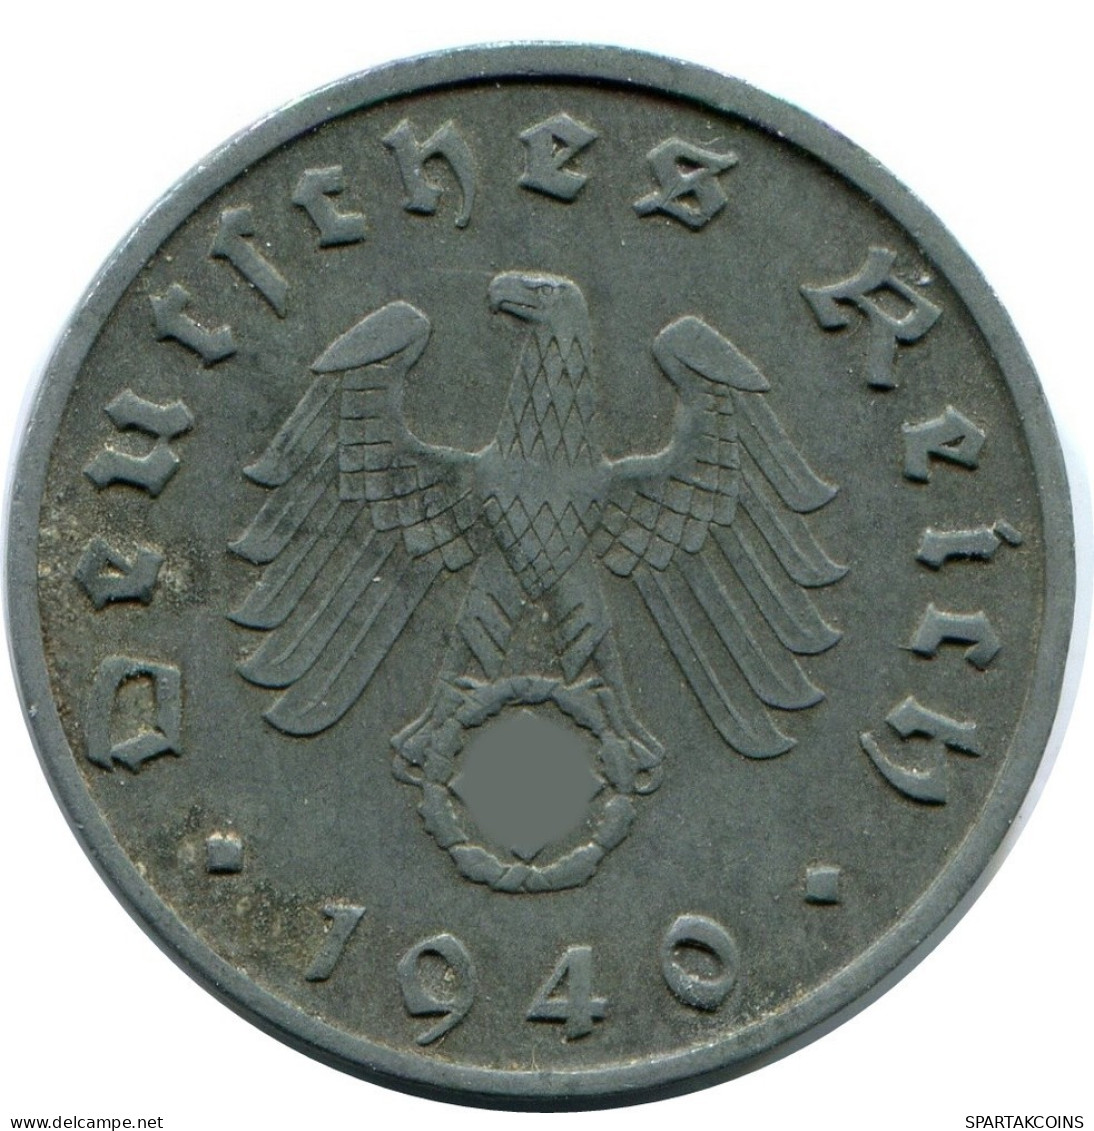 10 REICHSPFENNIG 1940 B GERMANY Coin #DA791.U.A - 10 Reichspfennig